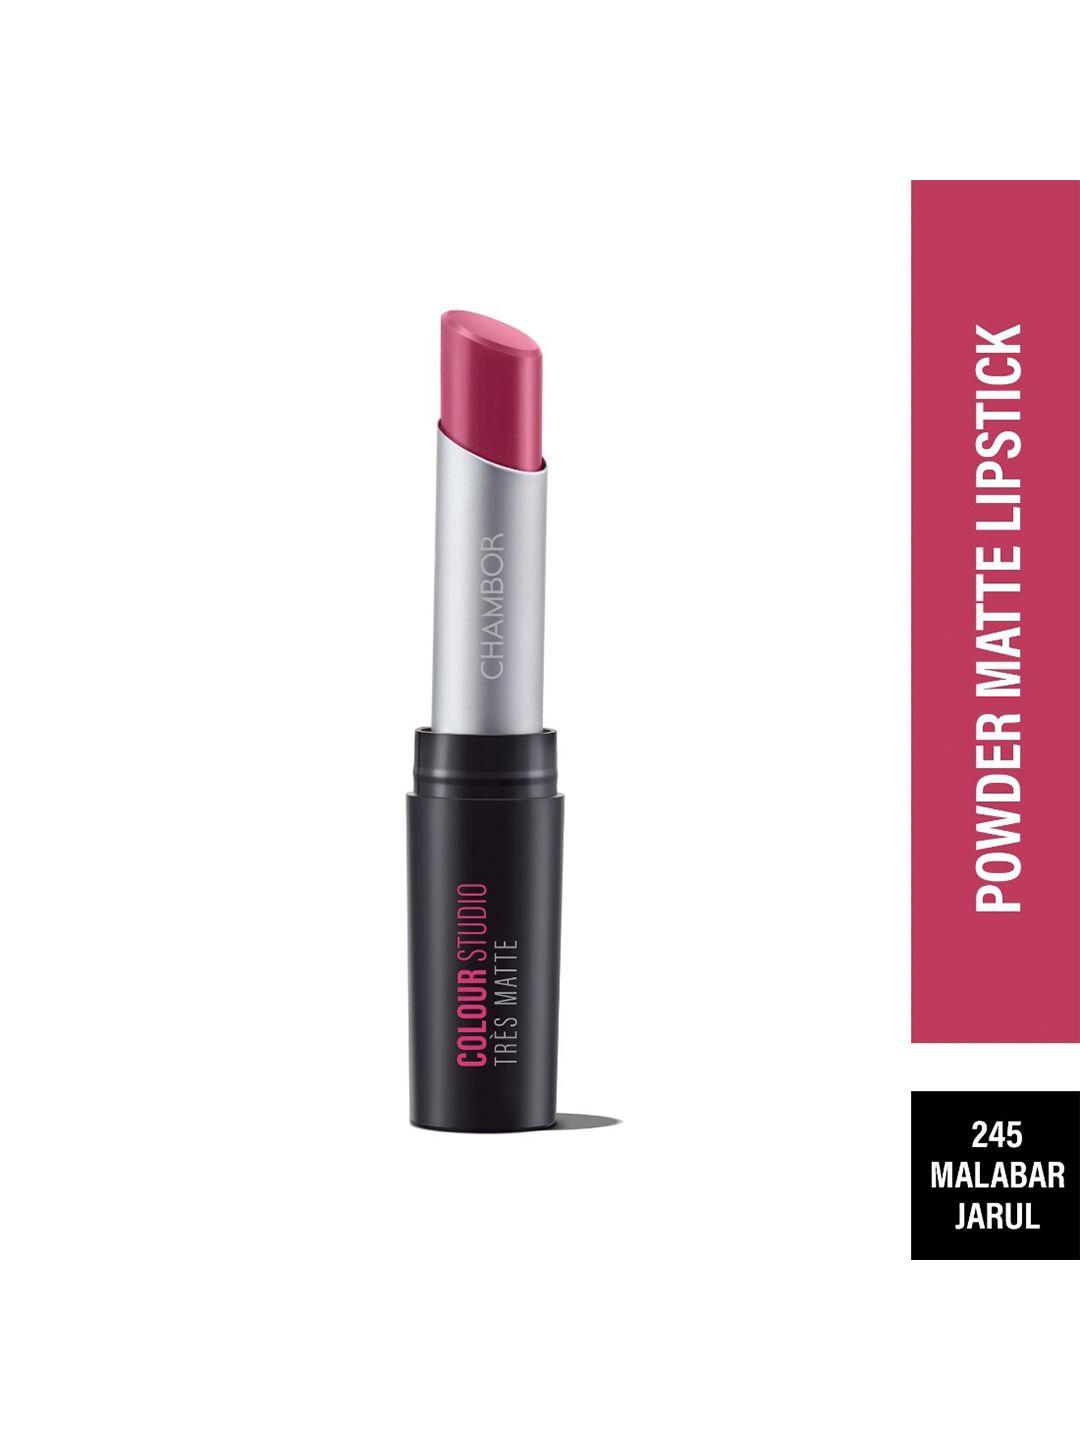 powdery matte glamour lipstick with spf 30- malabar jarul 245